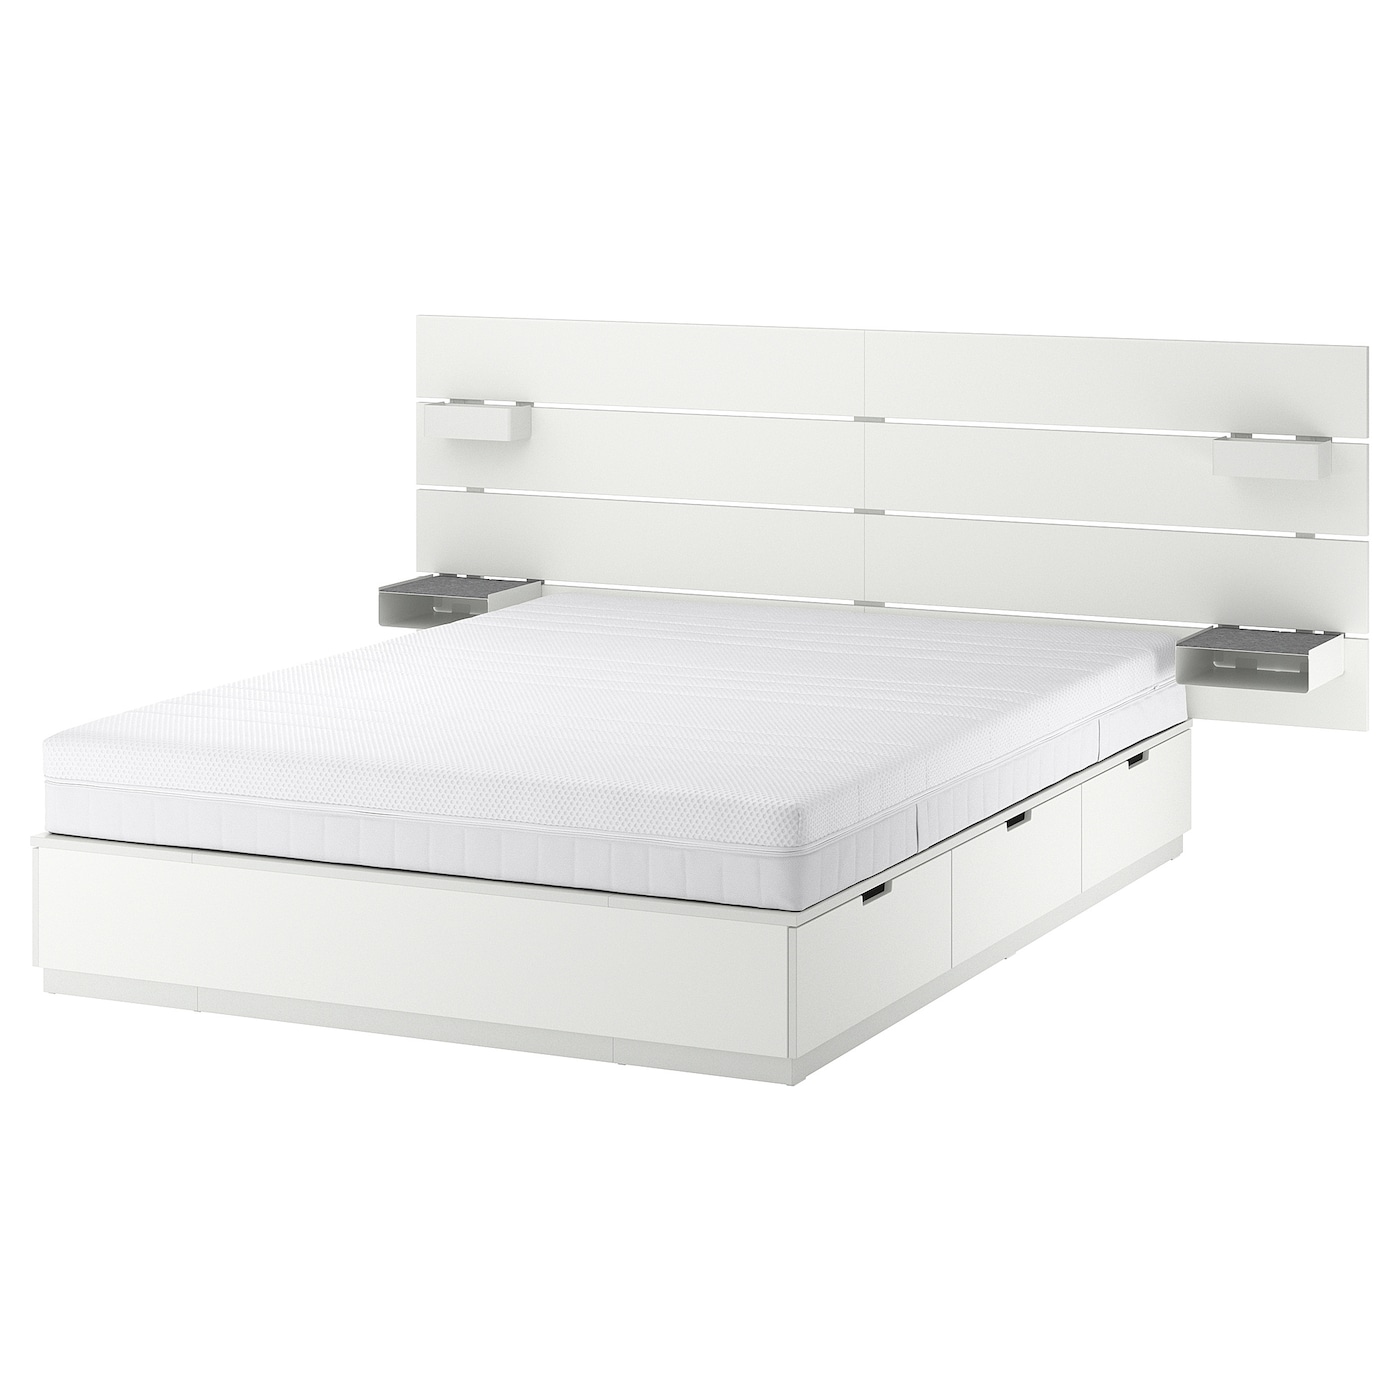 Каркас кровати с ящиком для хранения и матрасом - IKEA NORDLI, 200х160 см, матрас жесткий, белый, НОРДЛИ ИКЕА